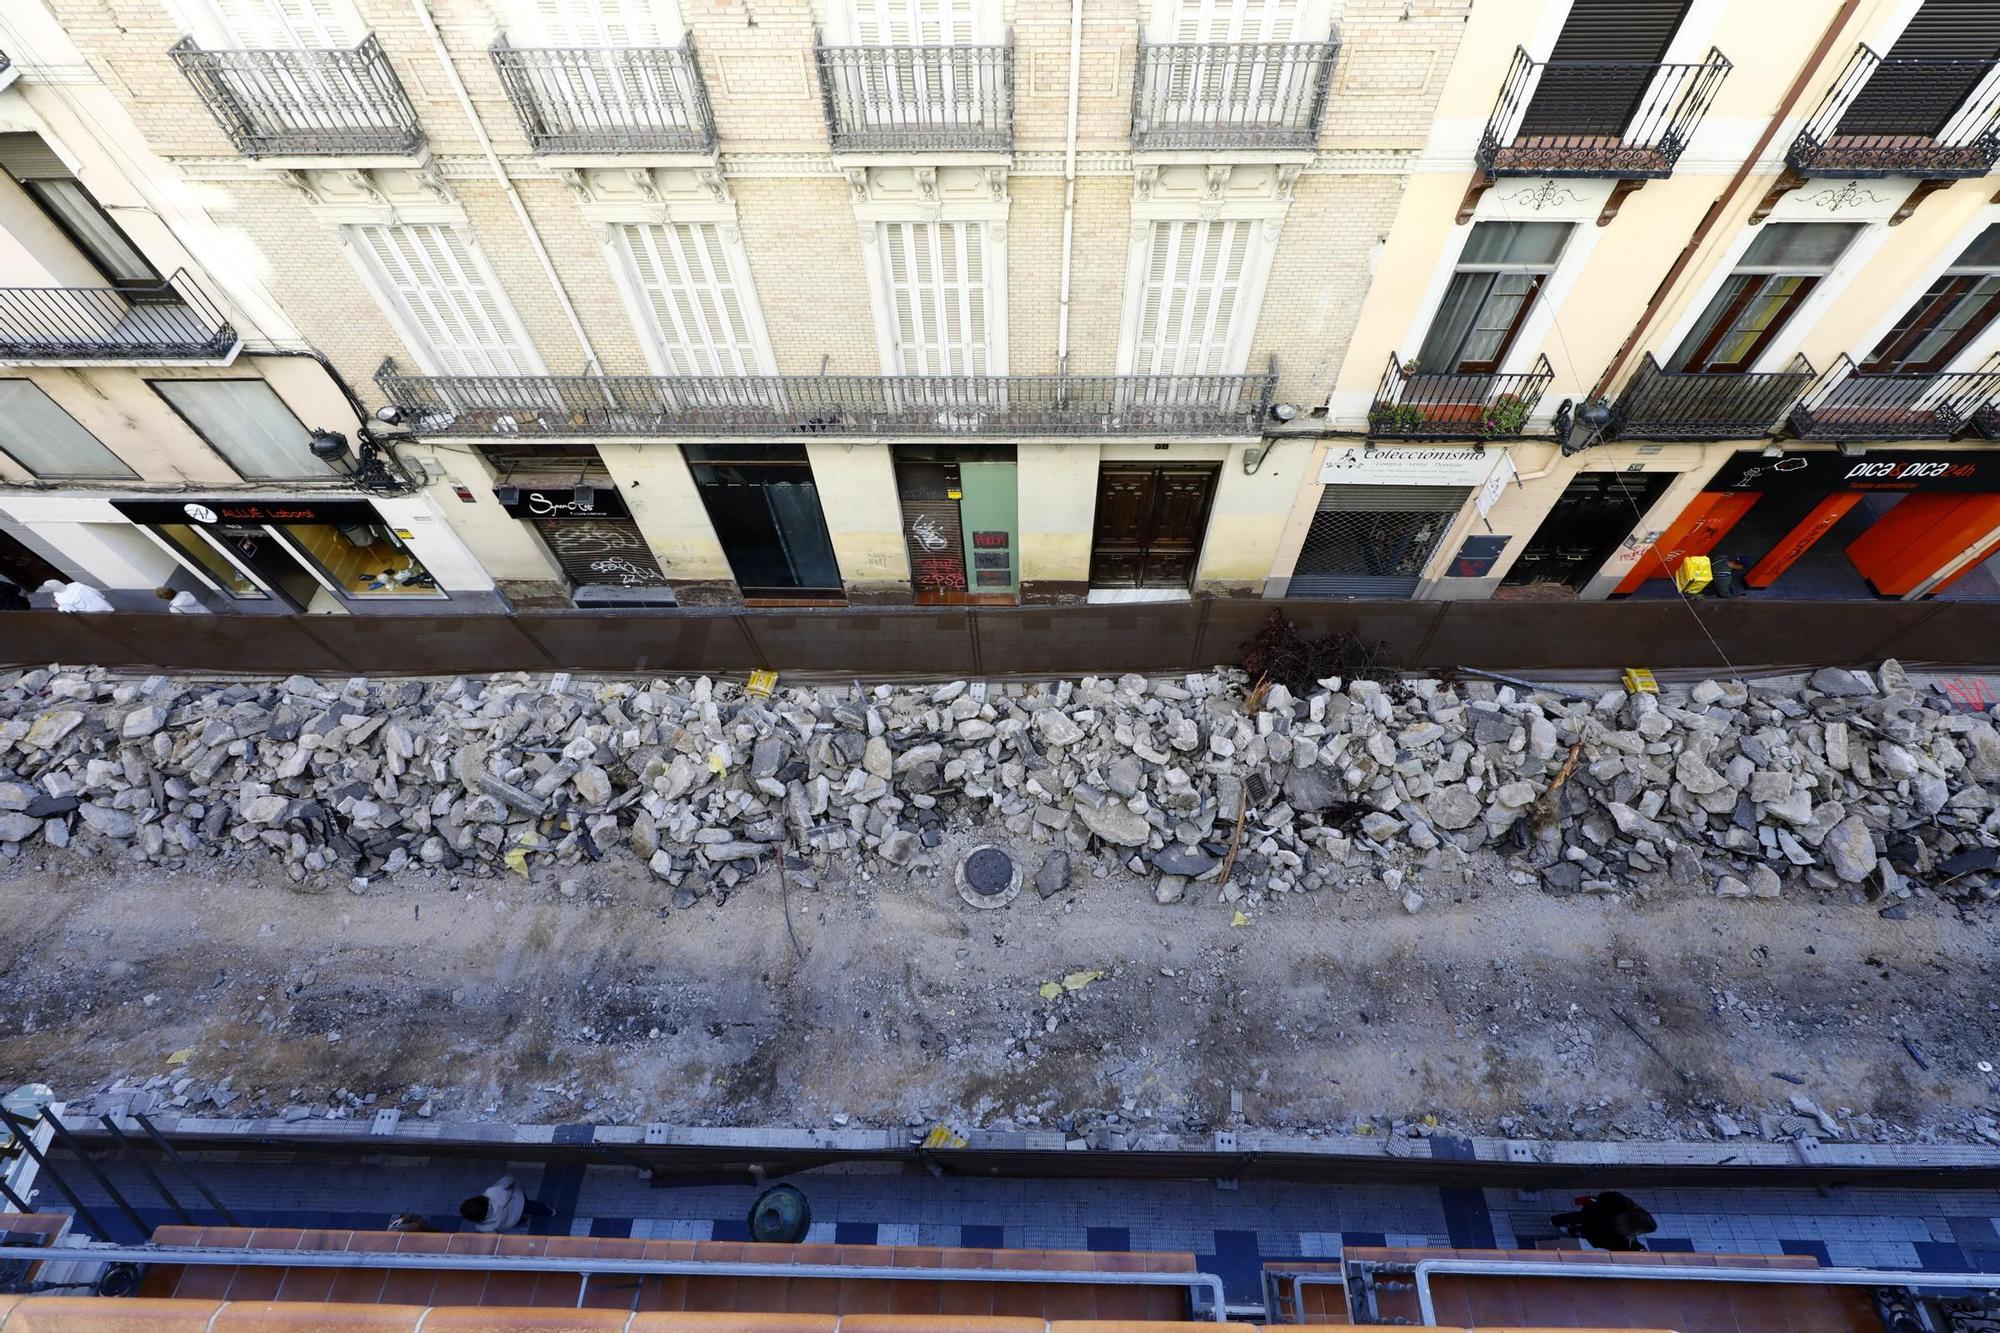 Adiós a la antigua calle Manifestación de Zaragoza: los primeros trabajos dejan estas imágenes